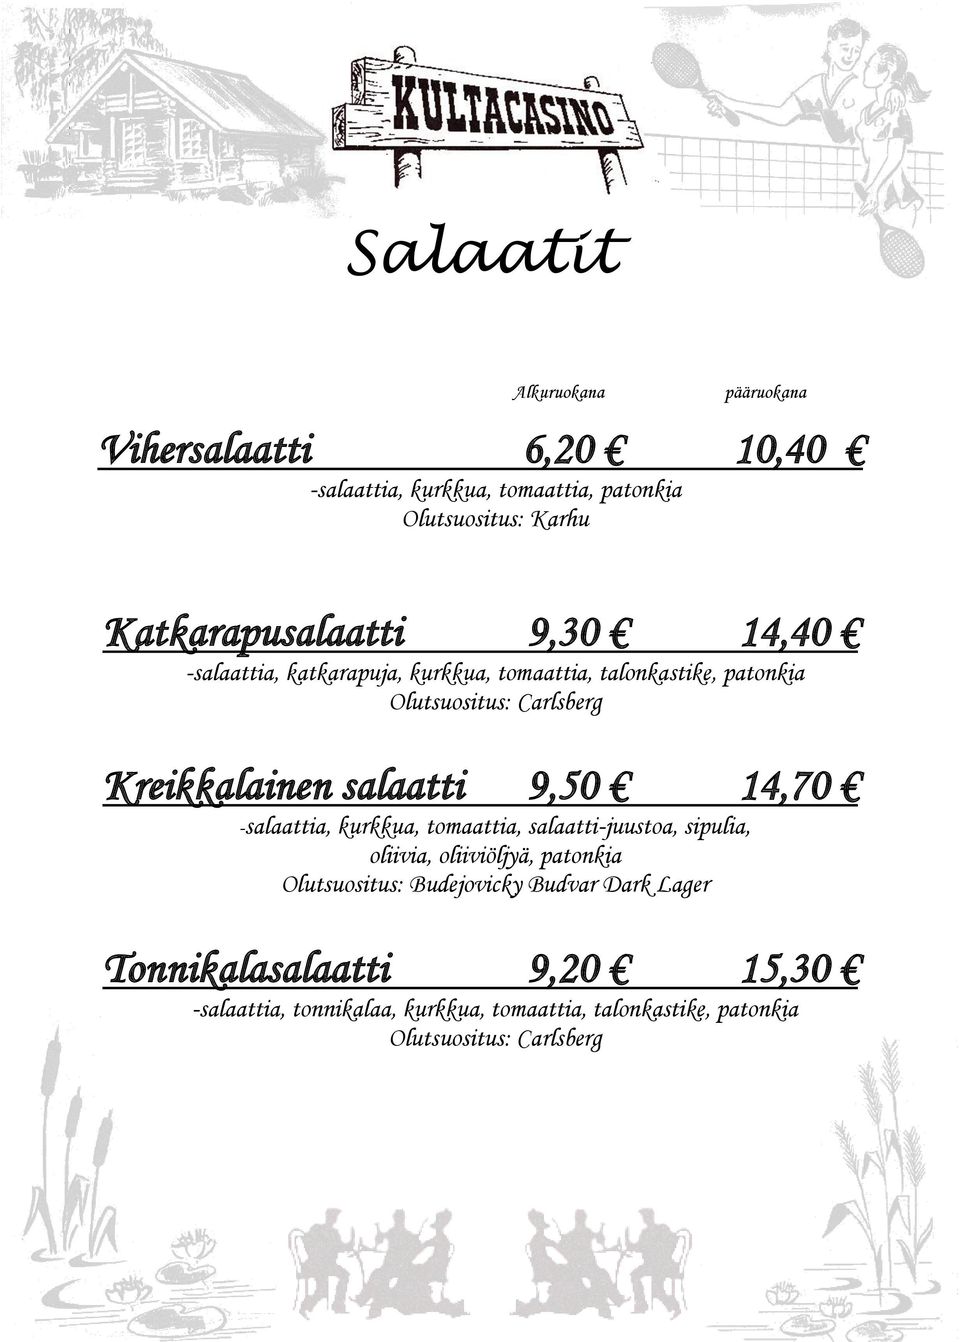 Kreikkalainen salaatti 9,50 14,70 -salaattia, kurkkua, tomaattia, salaatti-juustoa, sipulia, oliivia, oliiviöljyä, patonkia